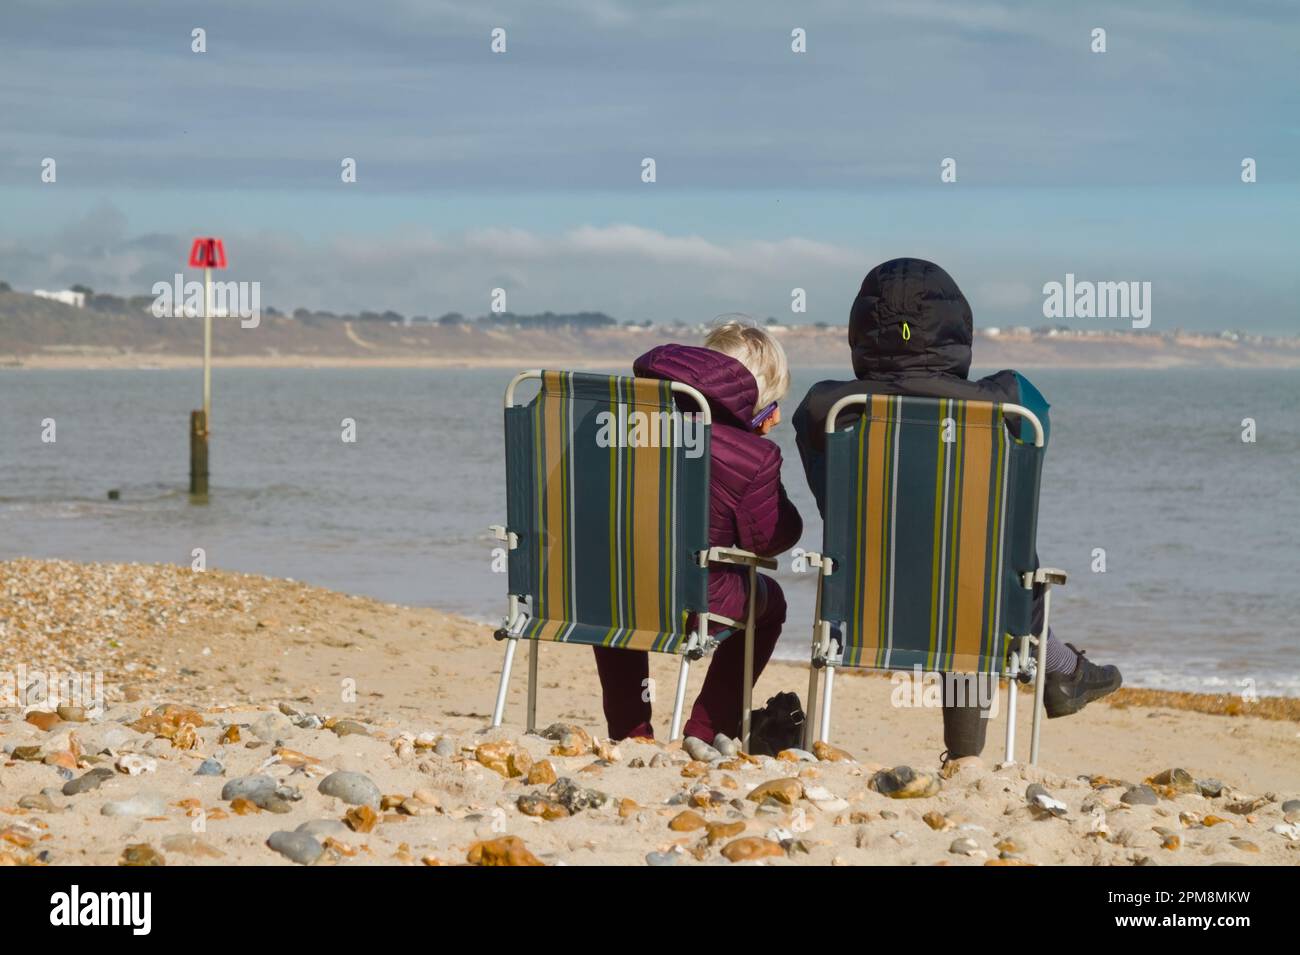 Deux personnes en pardessus enveloppé contre le froid assis sur des chaises foldaway appréciant le soleil d'hiver, Avon Beach, Christchurch Royaume-Uni Banque D'Images